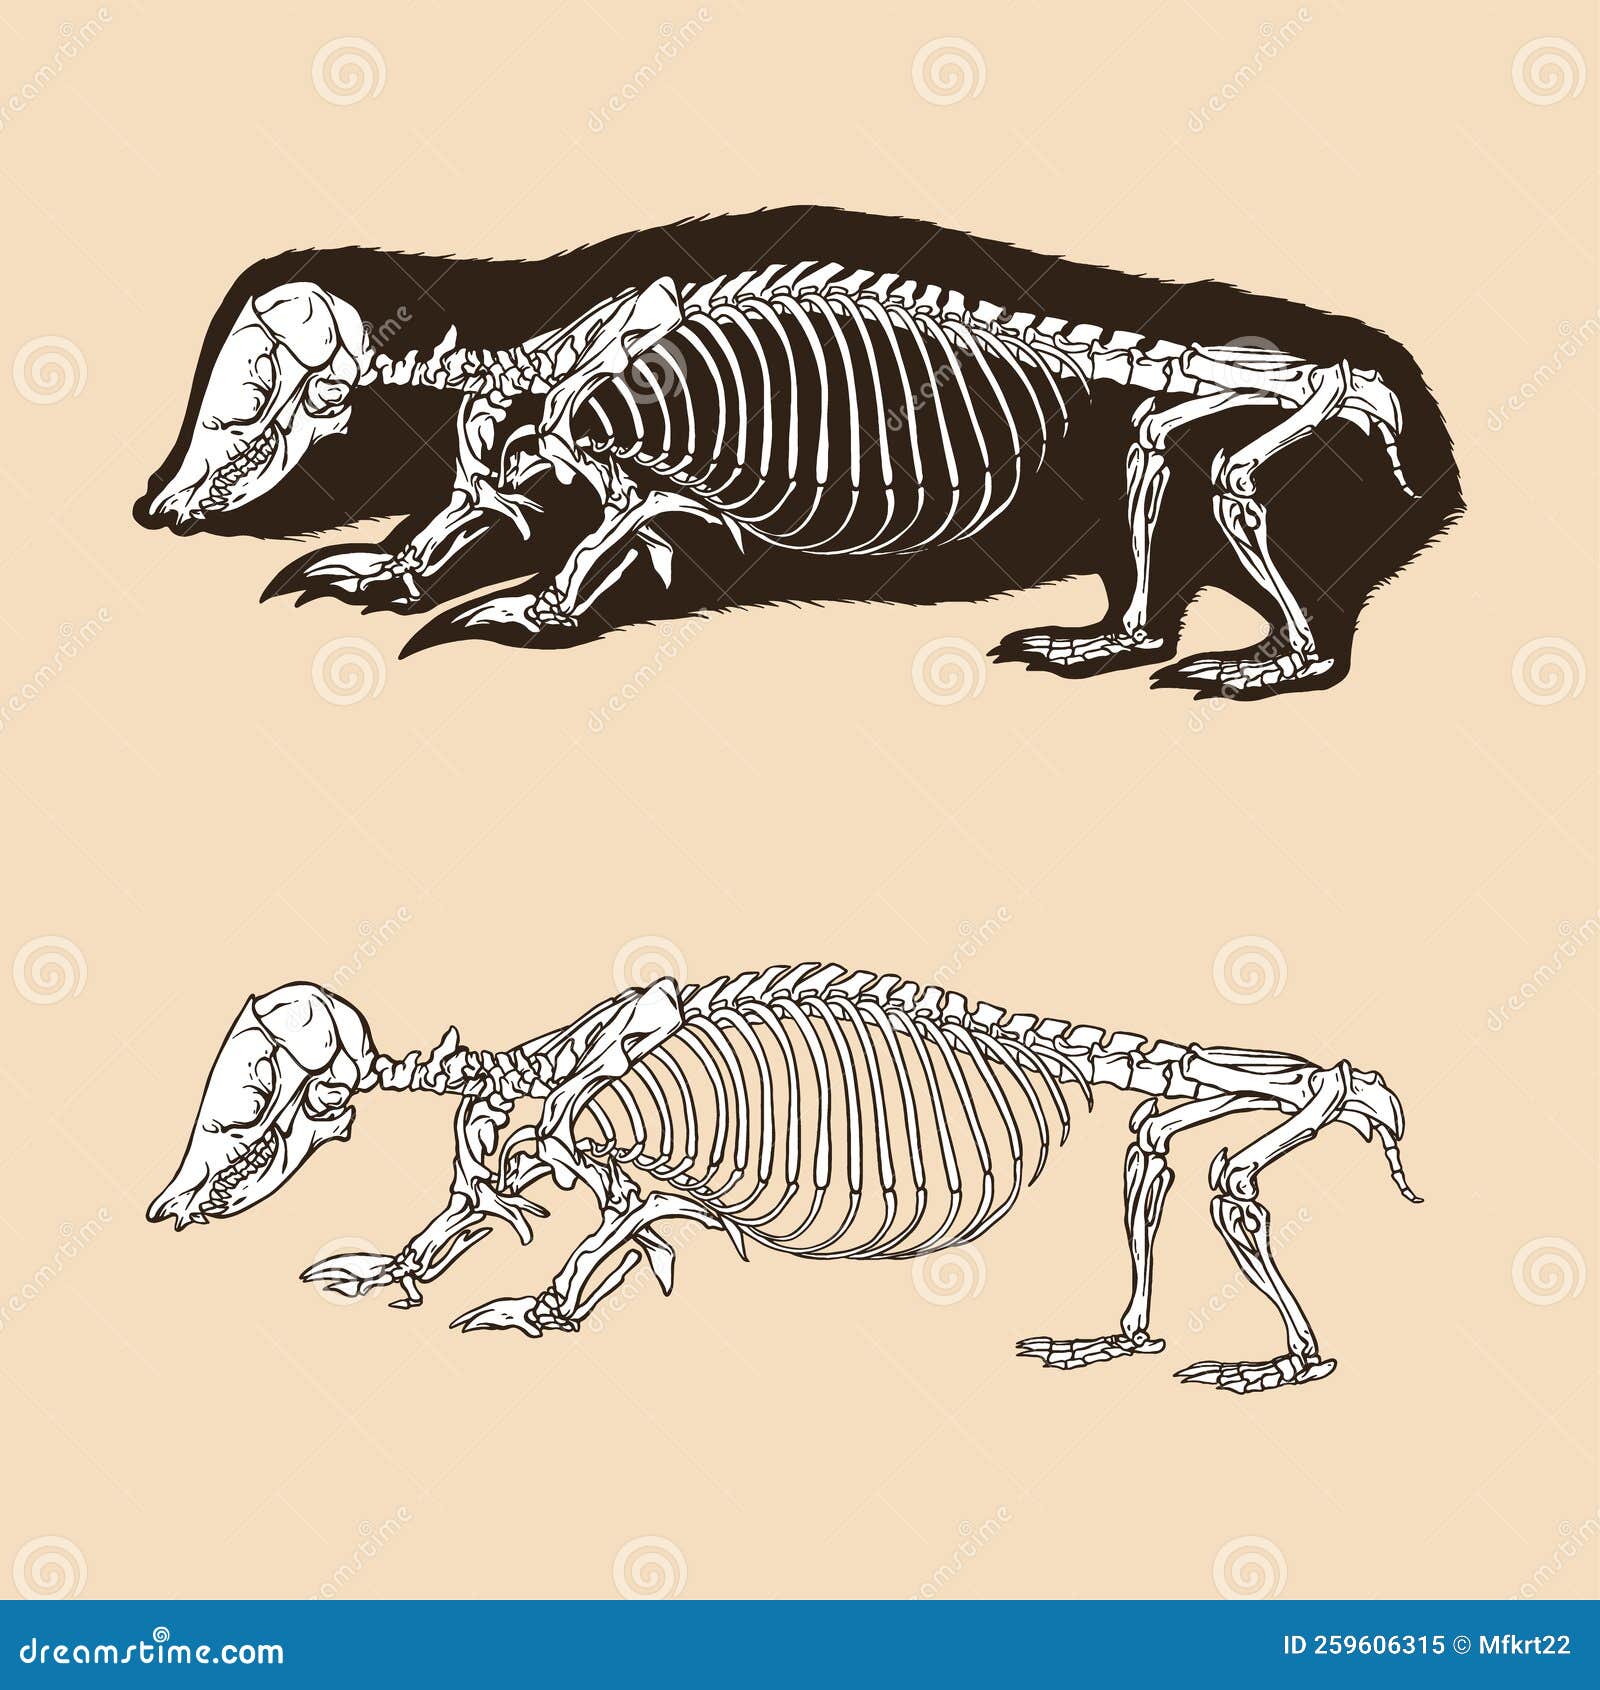 Skeleton Southern Marsupia Mole Vector Illustration Stock Illustration ...